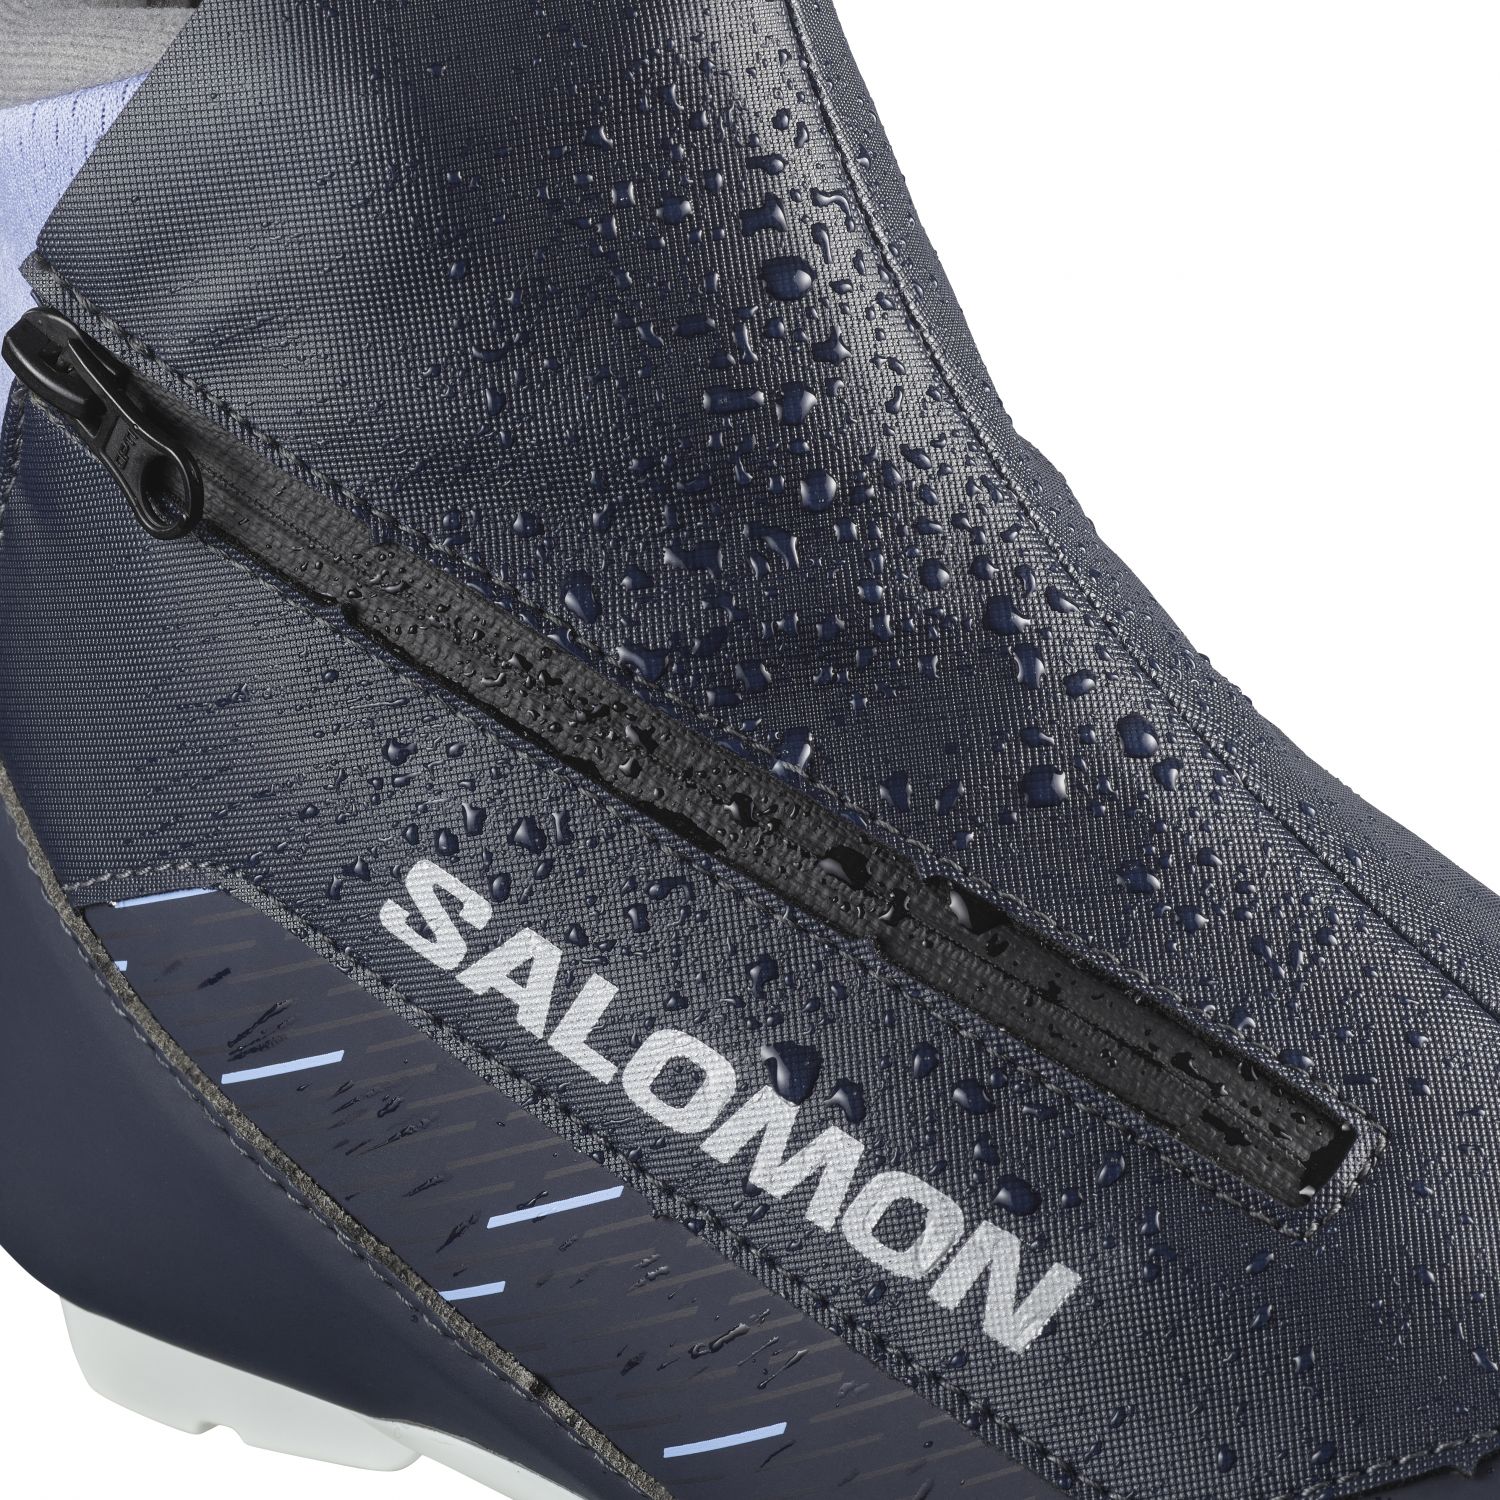 Salomon RC8 Vitane Prolink, langrendsstøvler, dame, sort